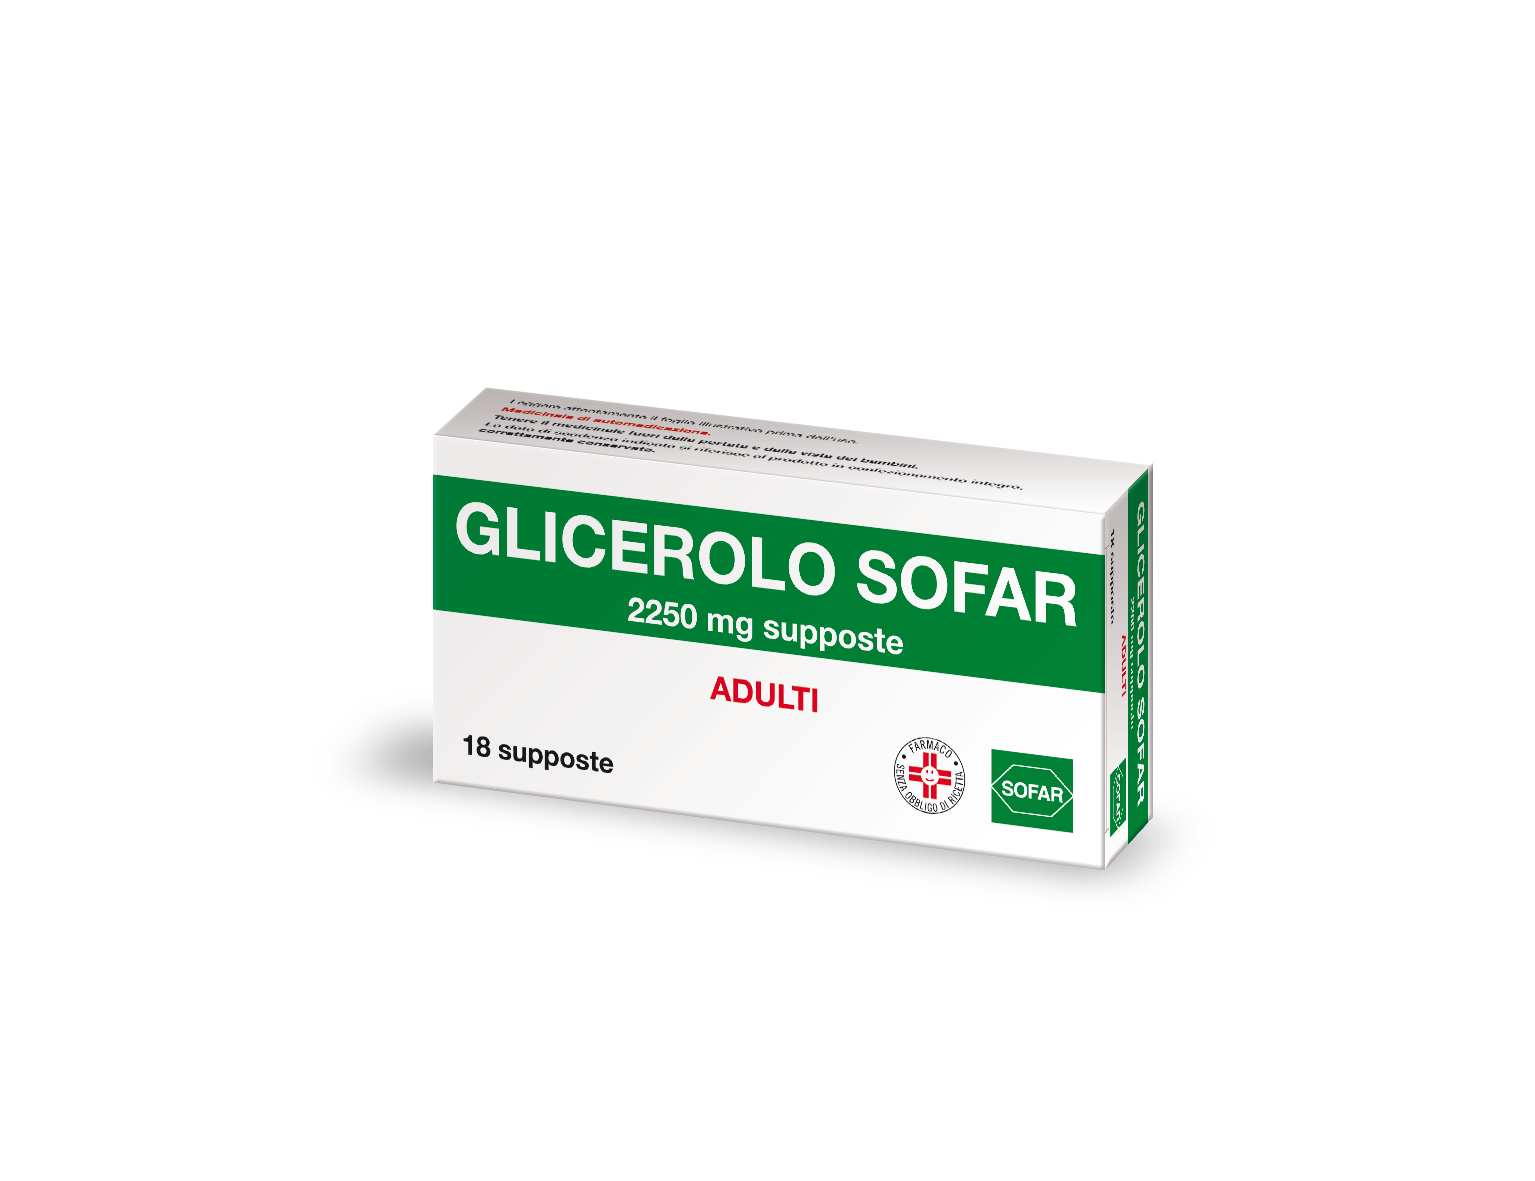 GLICEROLO SOFAR SUPPOSTE - GLICEROLO SOFAR SUPPOSTE